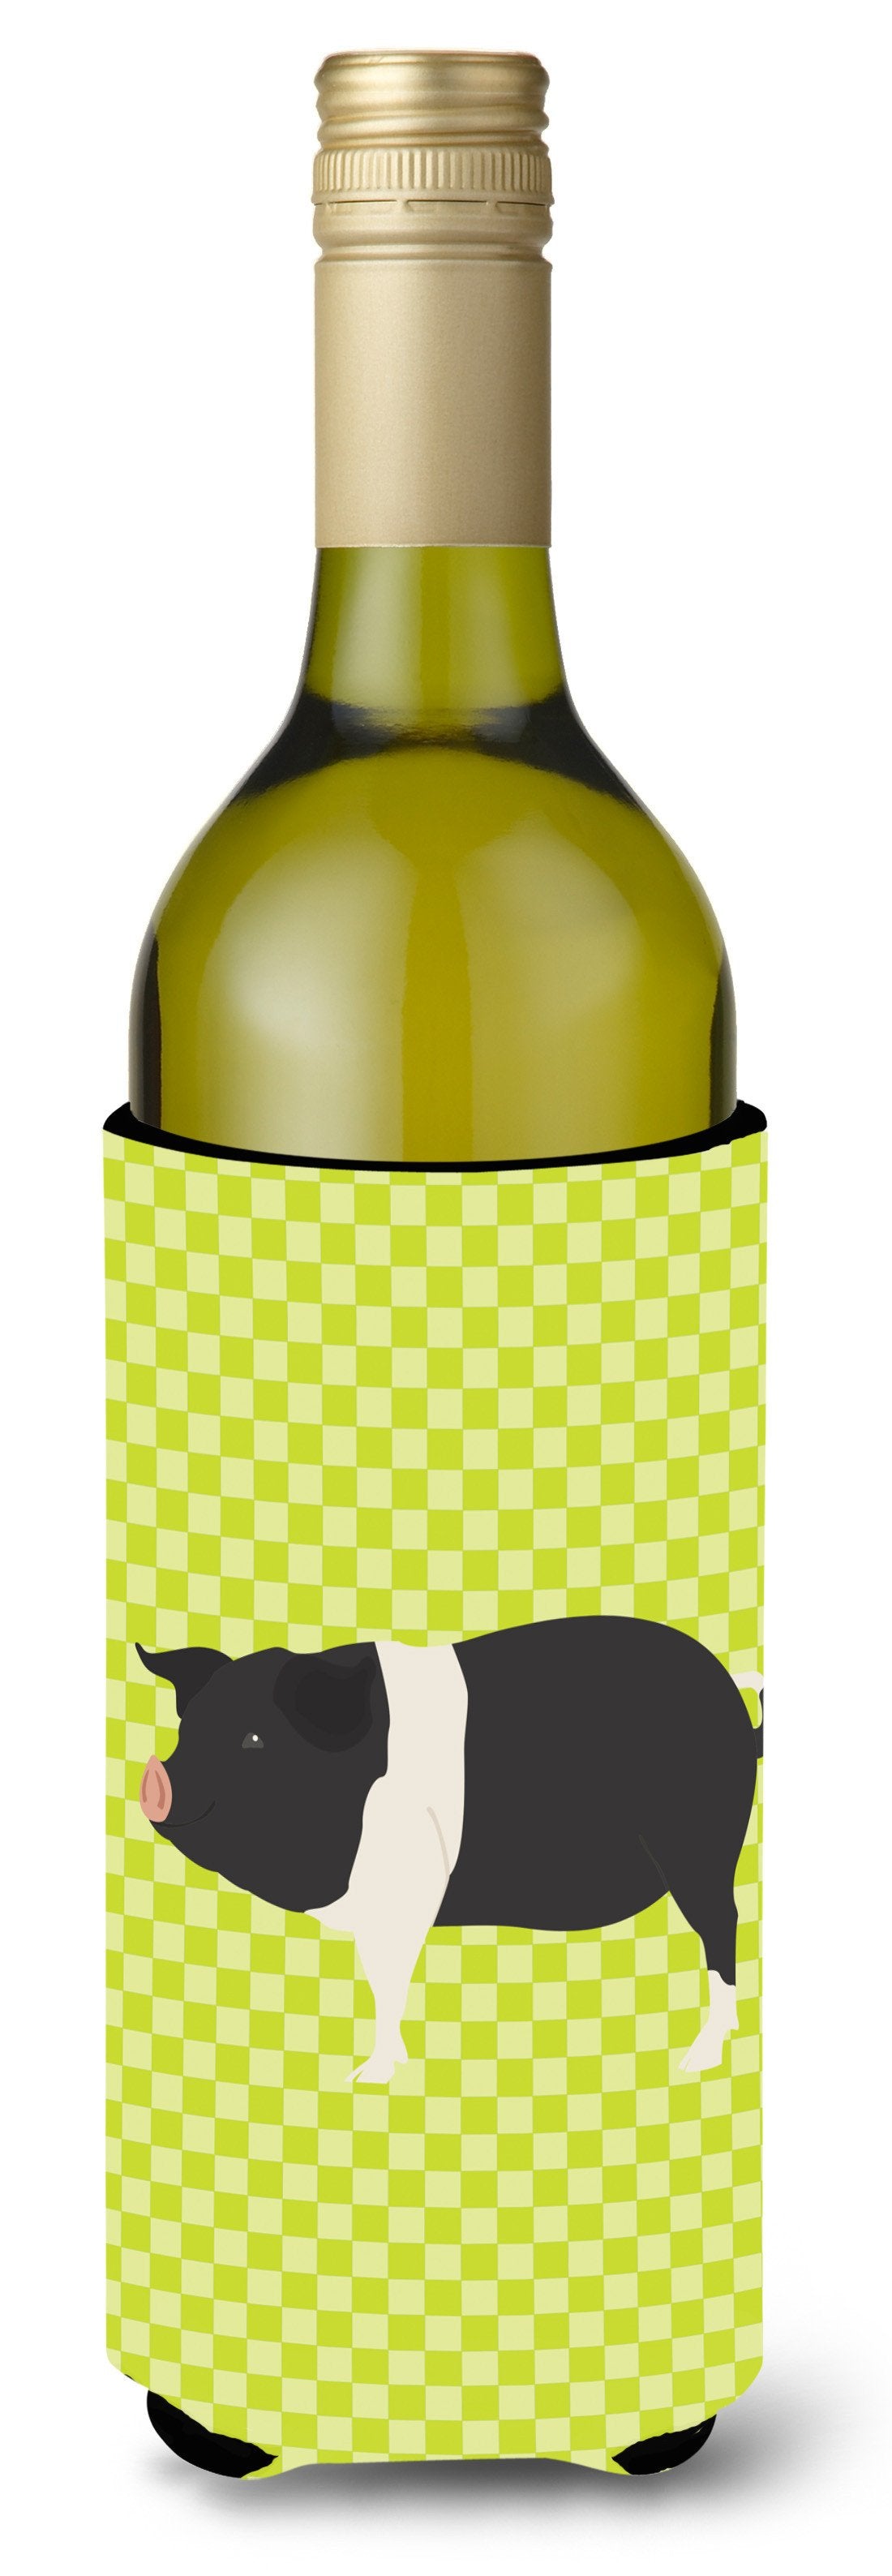 Hampshire Pig Green Wine Bottle Beverge Insulator Hugger BB7765LITERK by Caroline's Treasures